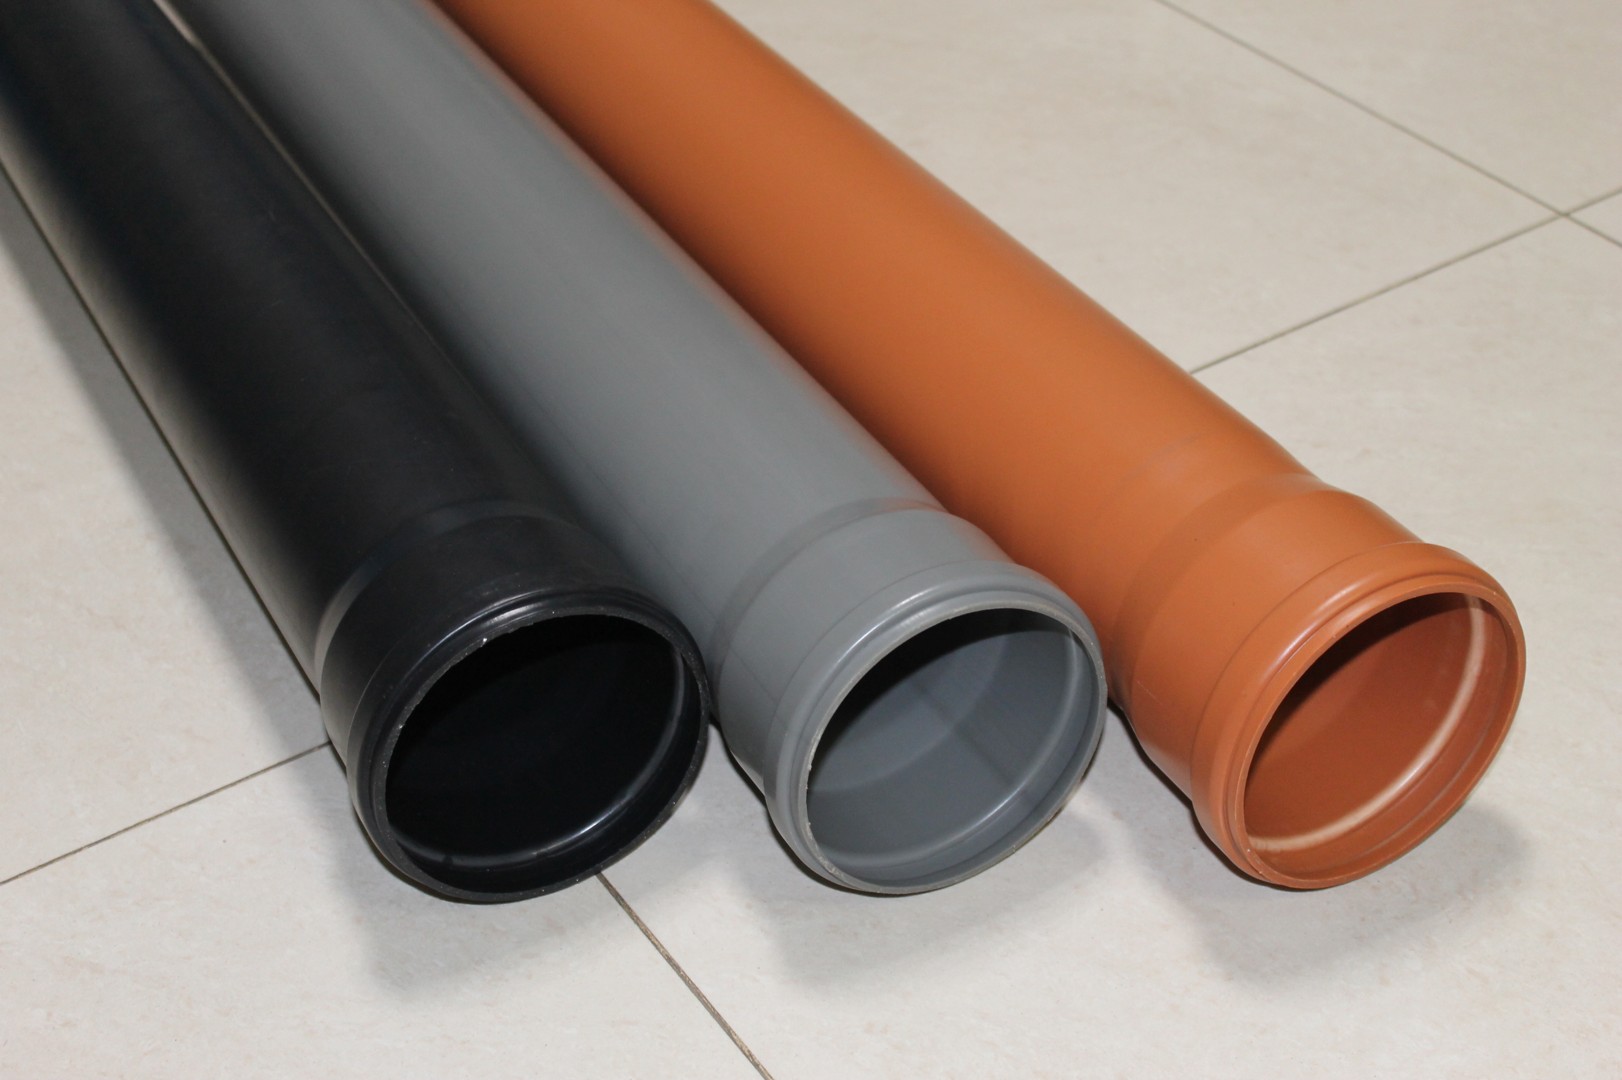 Технические характеристики пластиковой трубы для канализации диаметром 100 мм